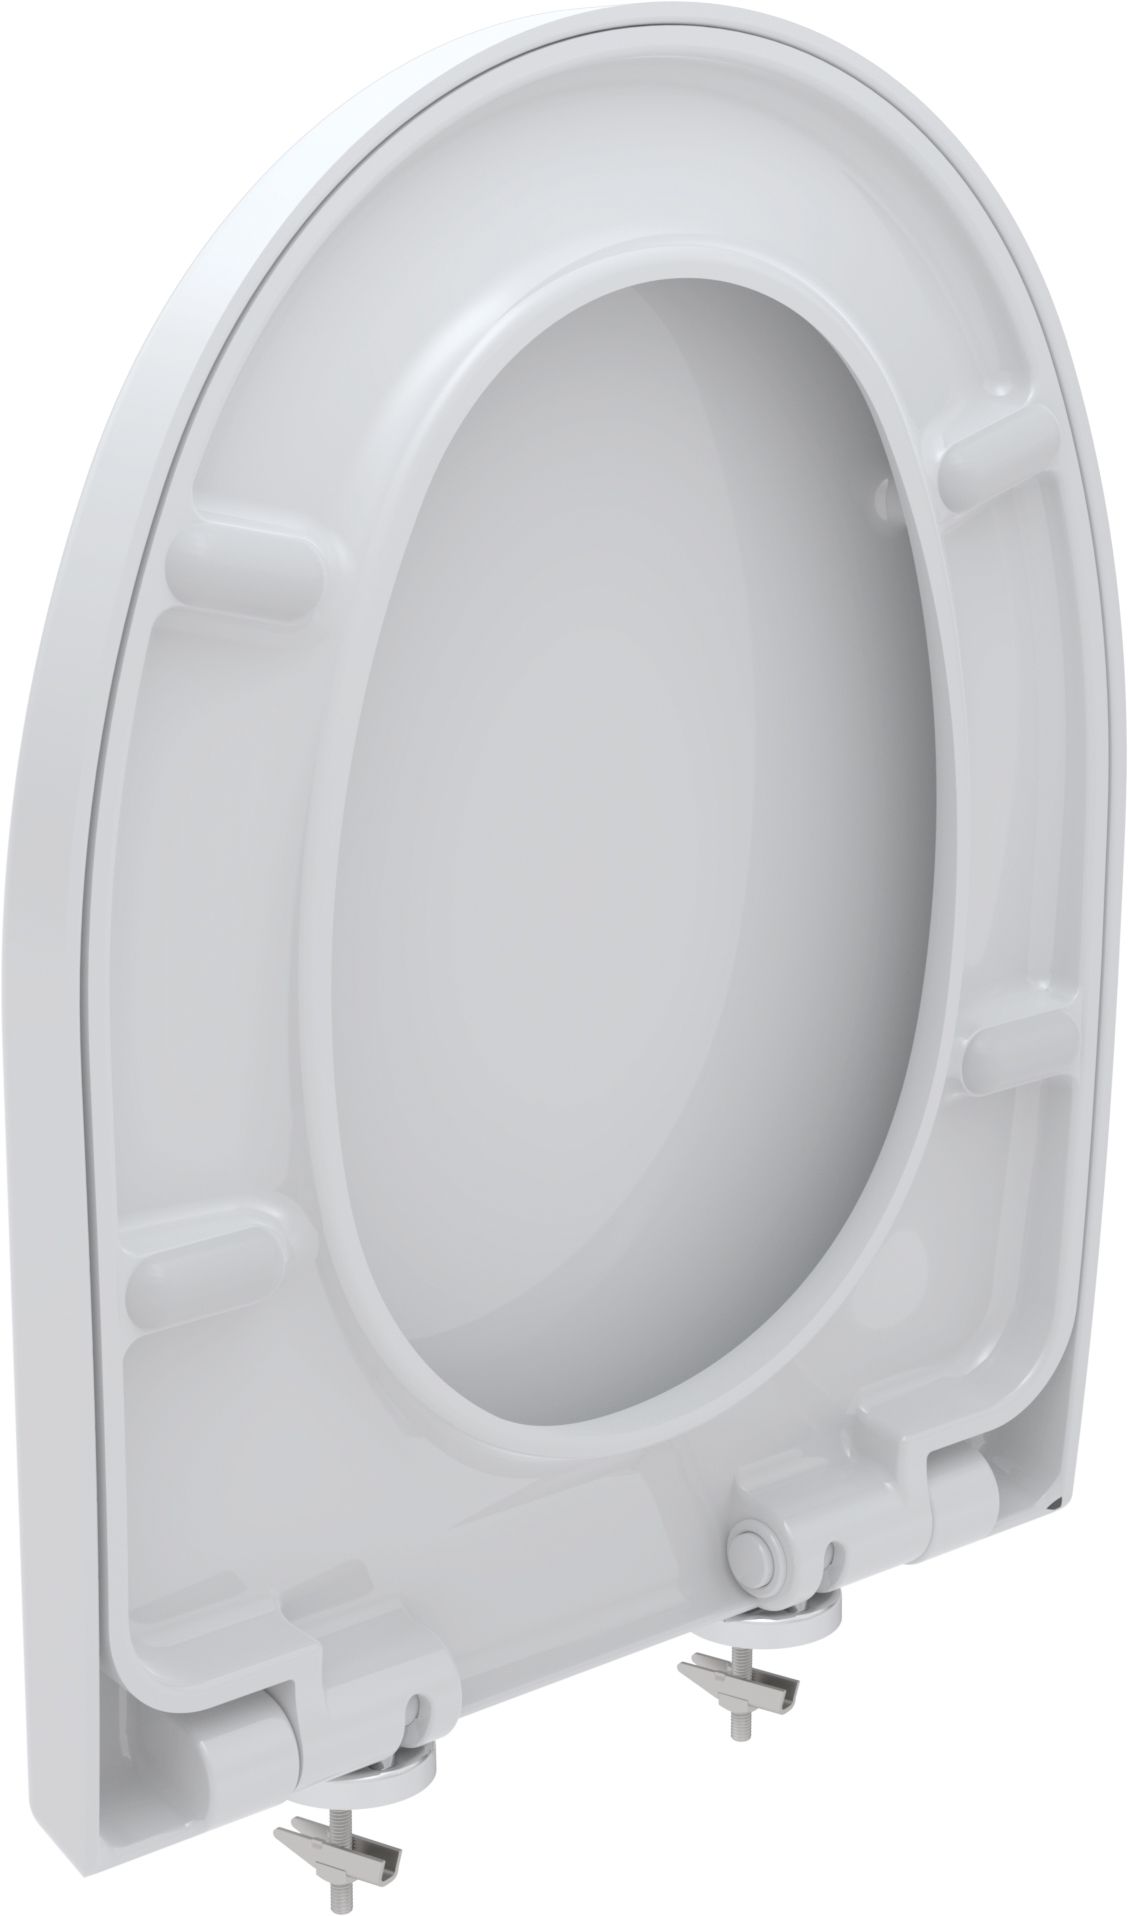 Toilet seat D-Star 300, white